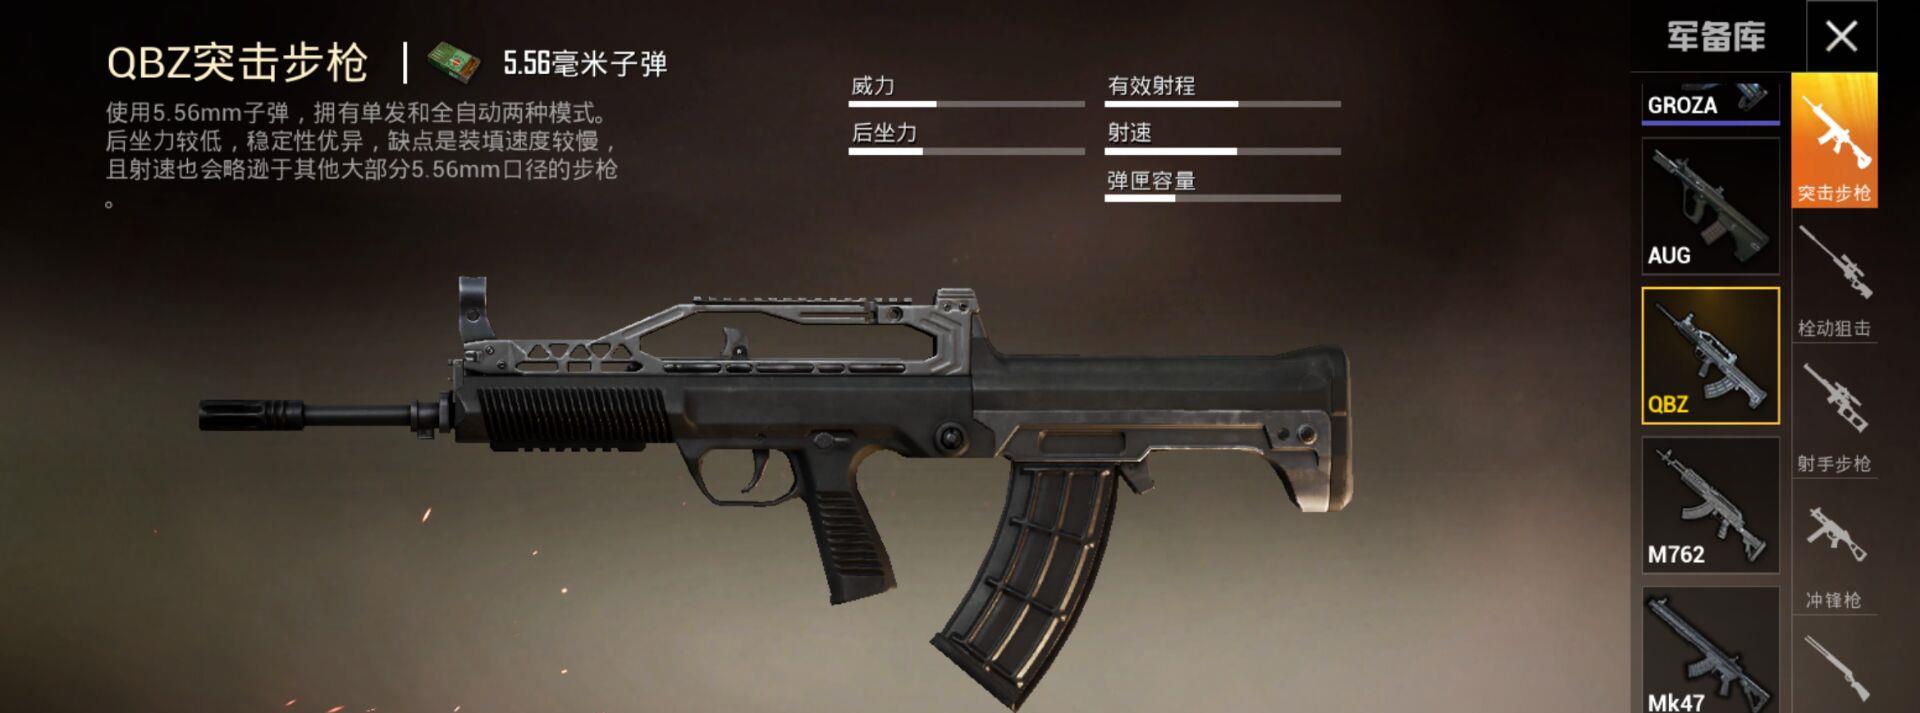 《和平精英》雨林qbz步枪,近战不如m762,专用地位被取代!